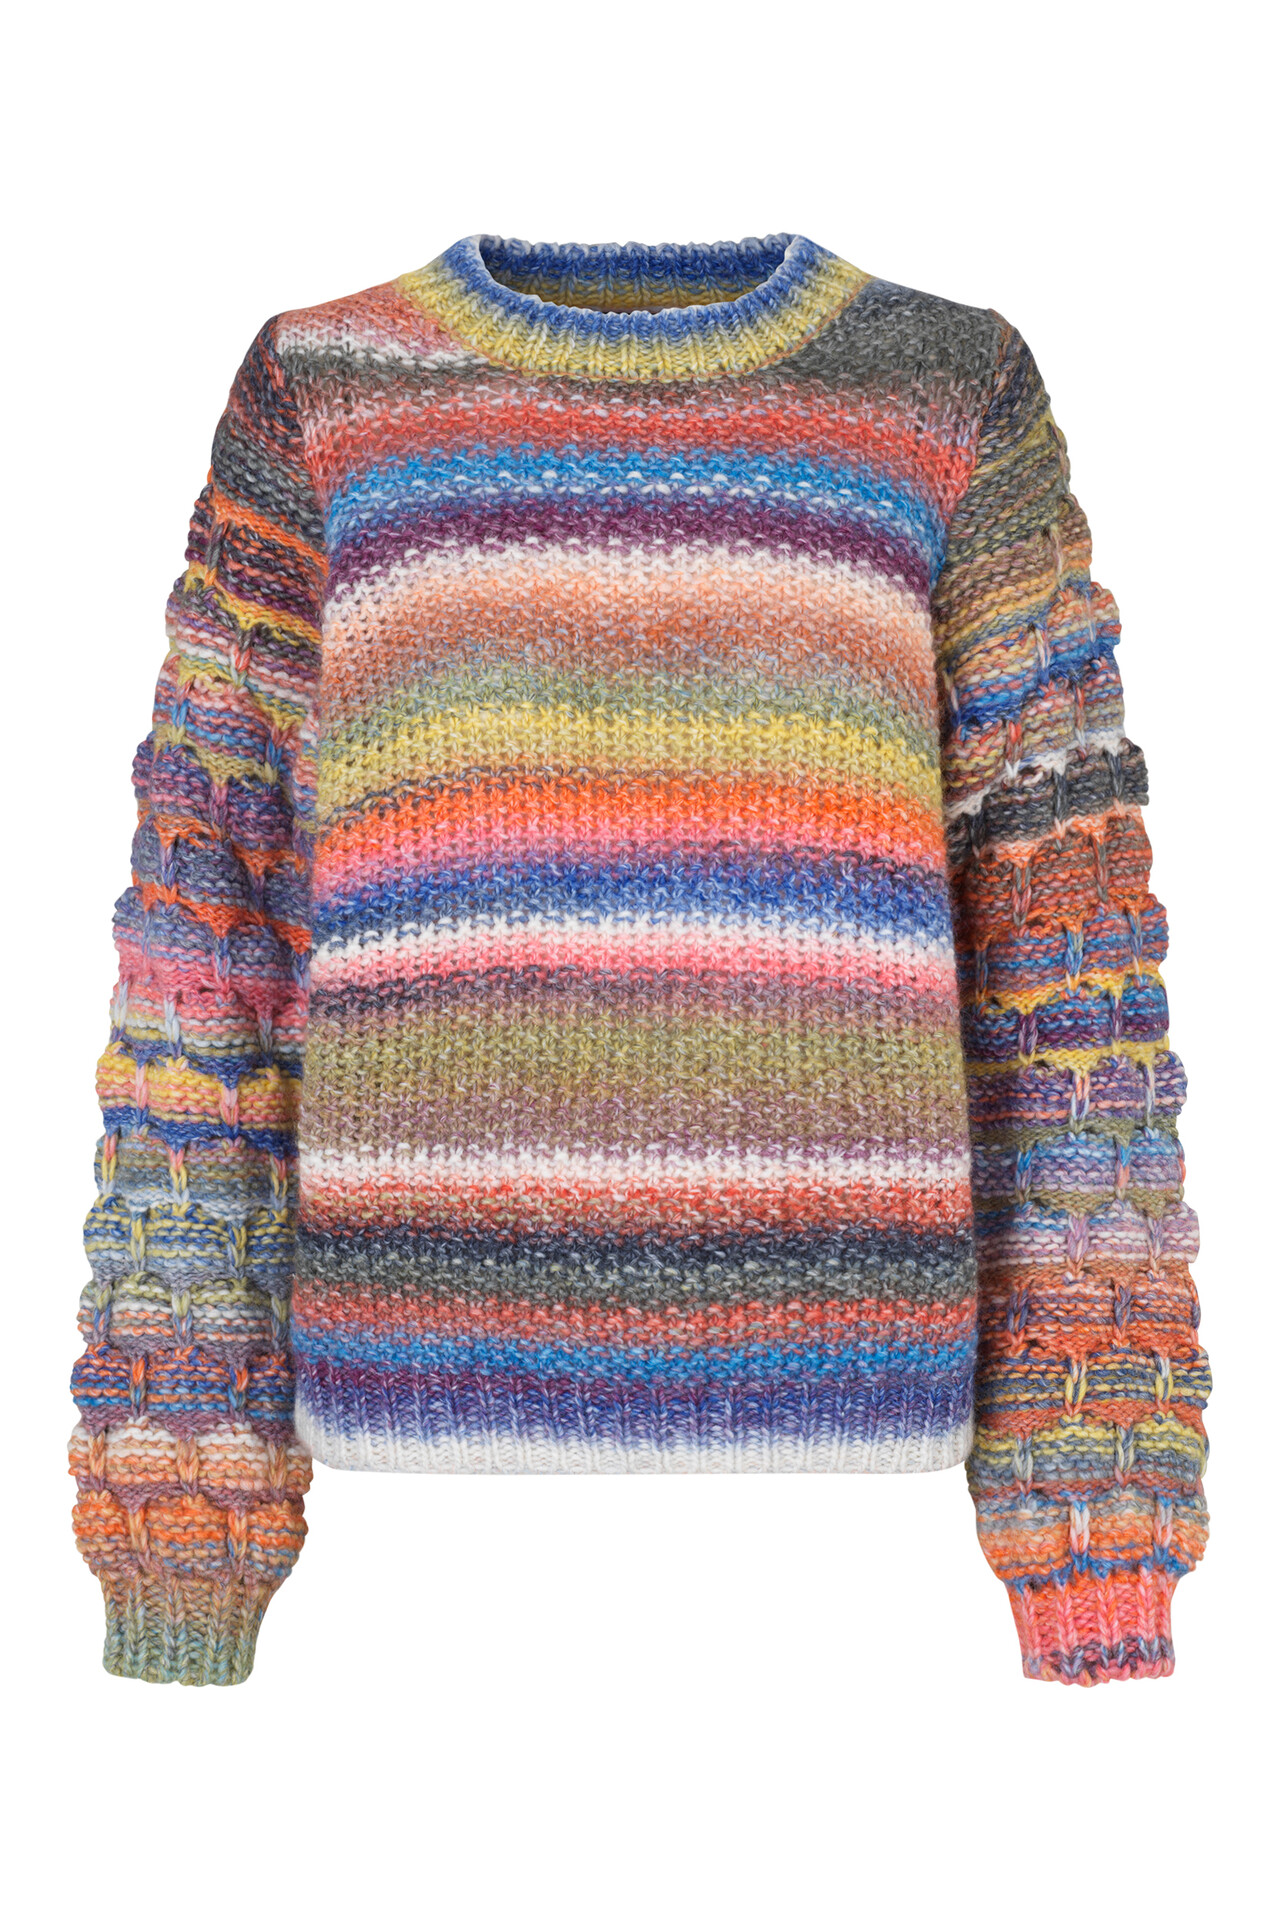 CRÉTON Bumble sweater (MULTI FARVET M) (5707900550073)